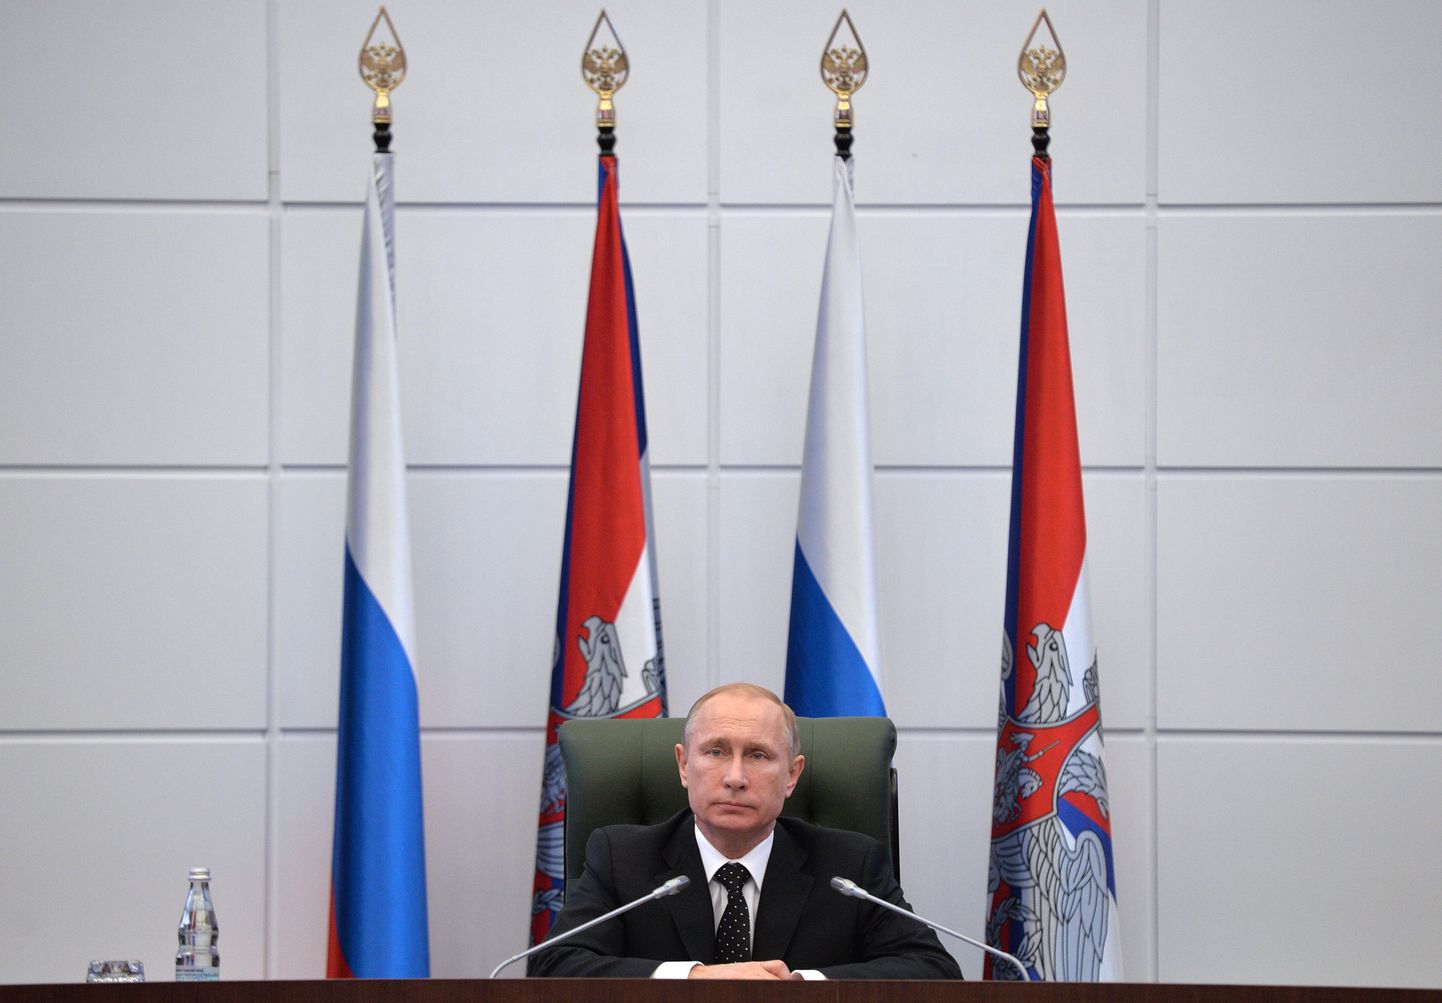 Vene president Vladimir Putin täna kaitseministeeriumis pressikonverentsil.